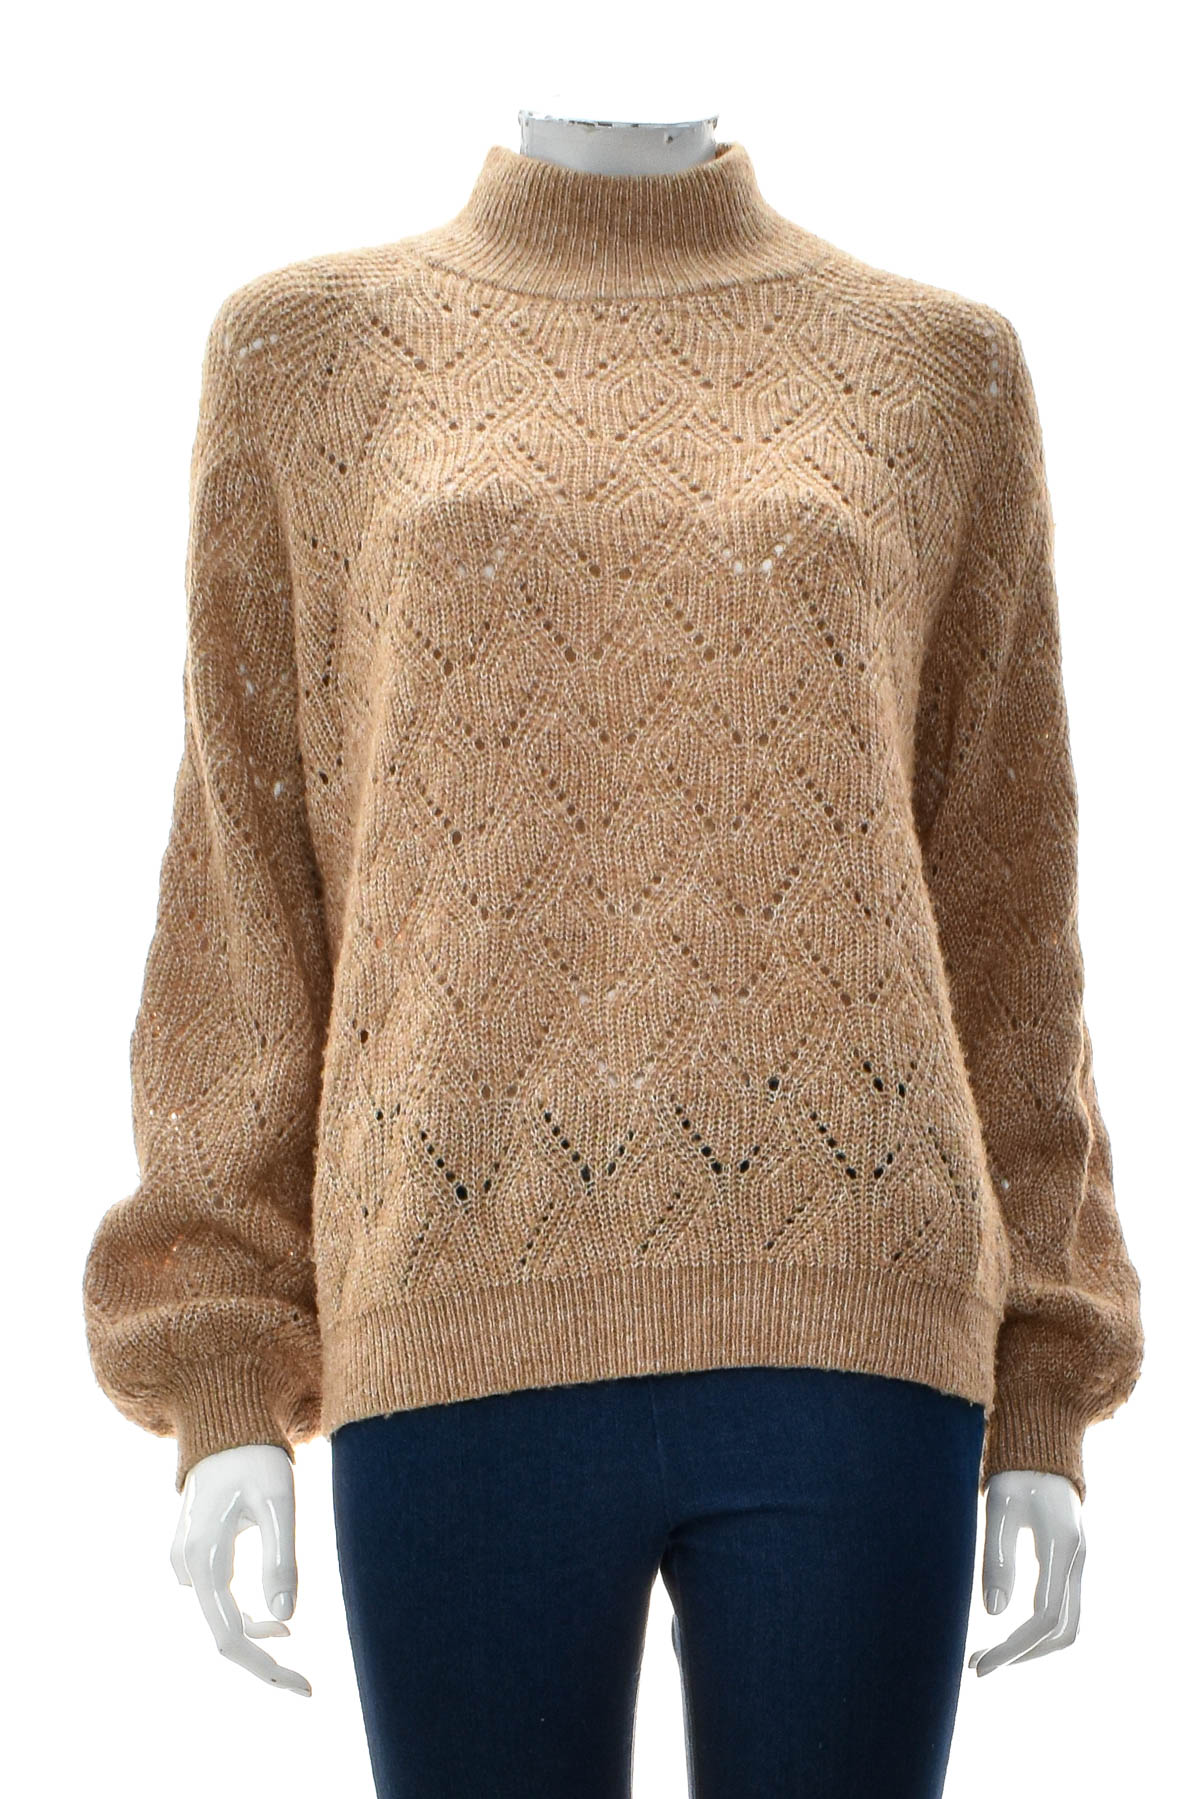 Women's sweater - OBJECT - 0